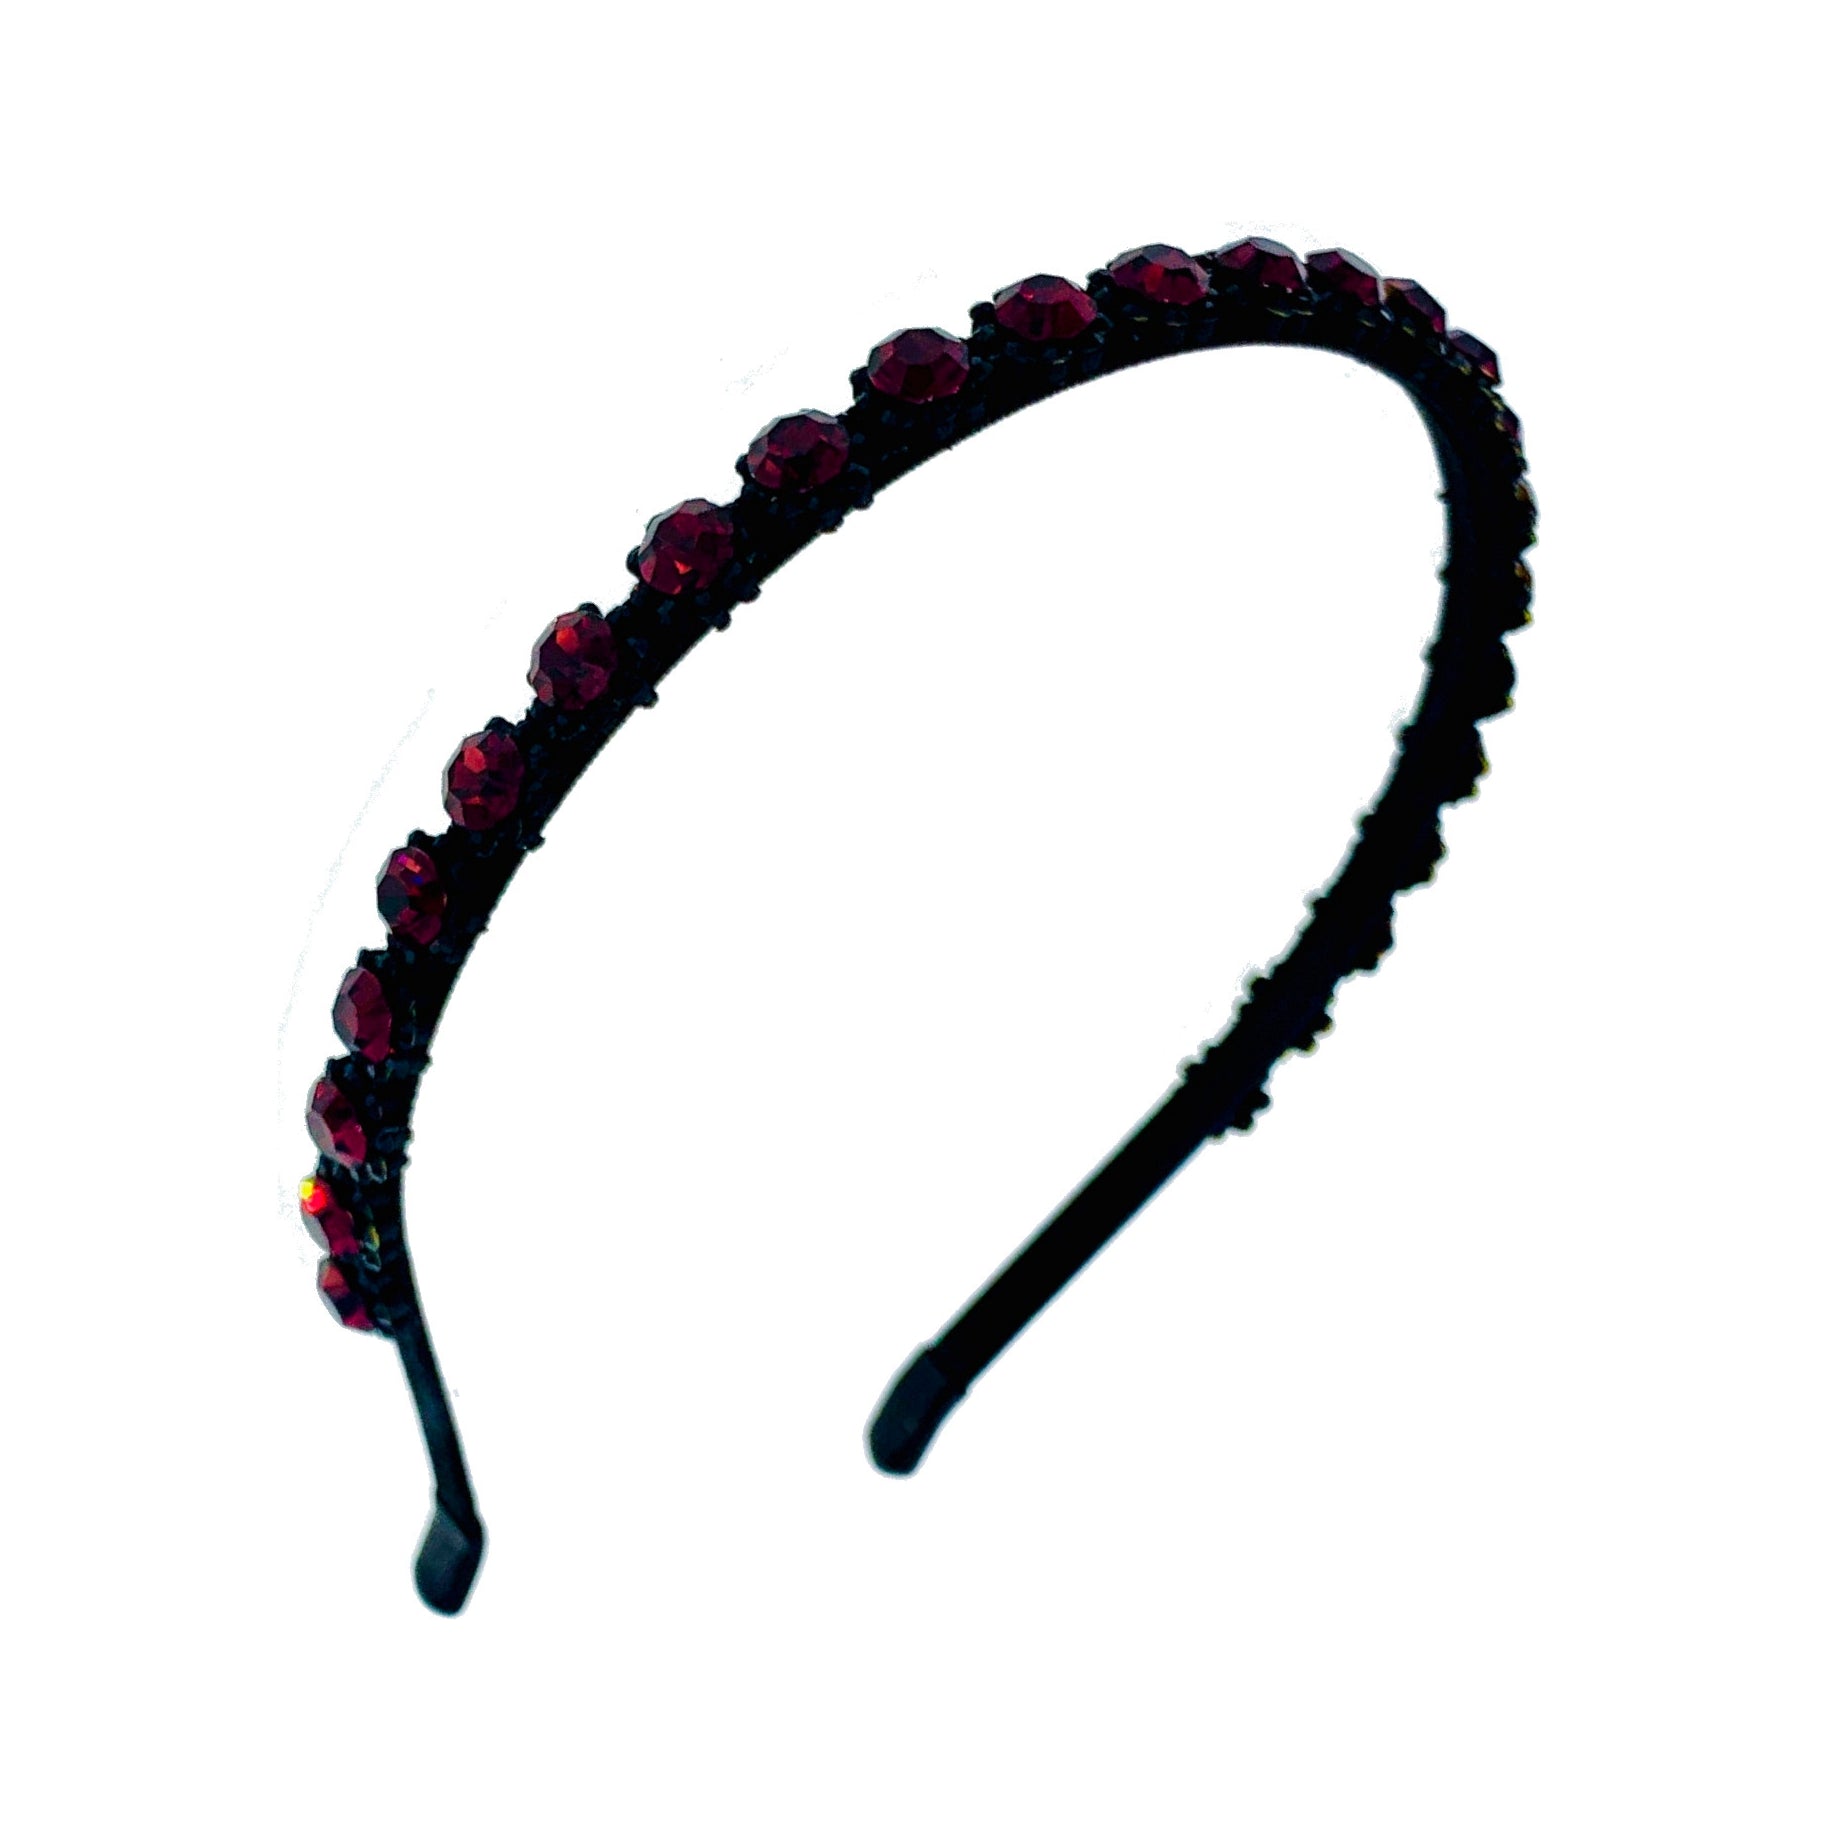 Ottila Simple Handmade Headband Hairband use Swarovski ELM Crystals, Headband - MOGHANT